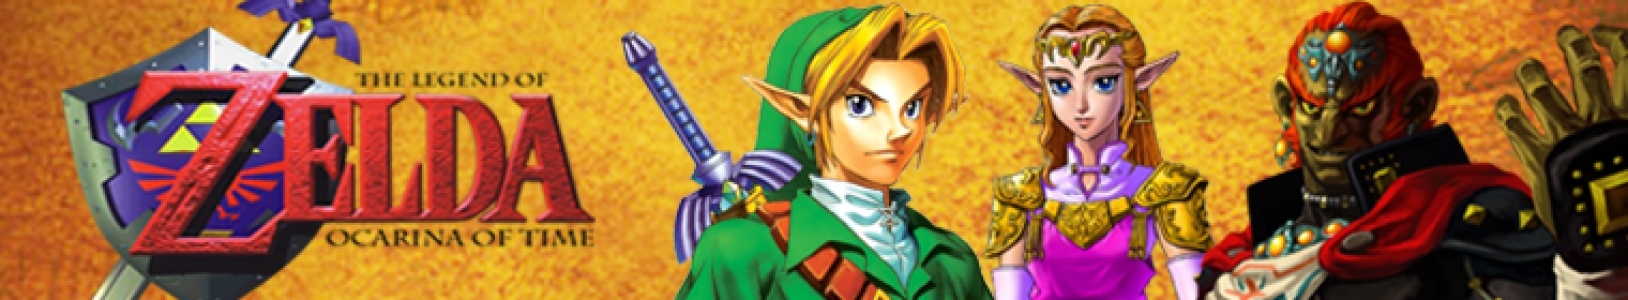 The Legend of Zelda: Ocarina of Time banner